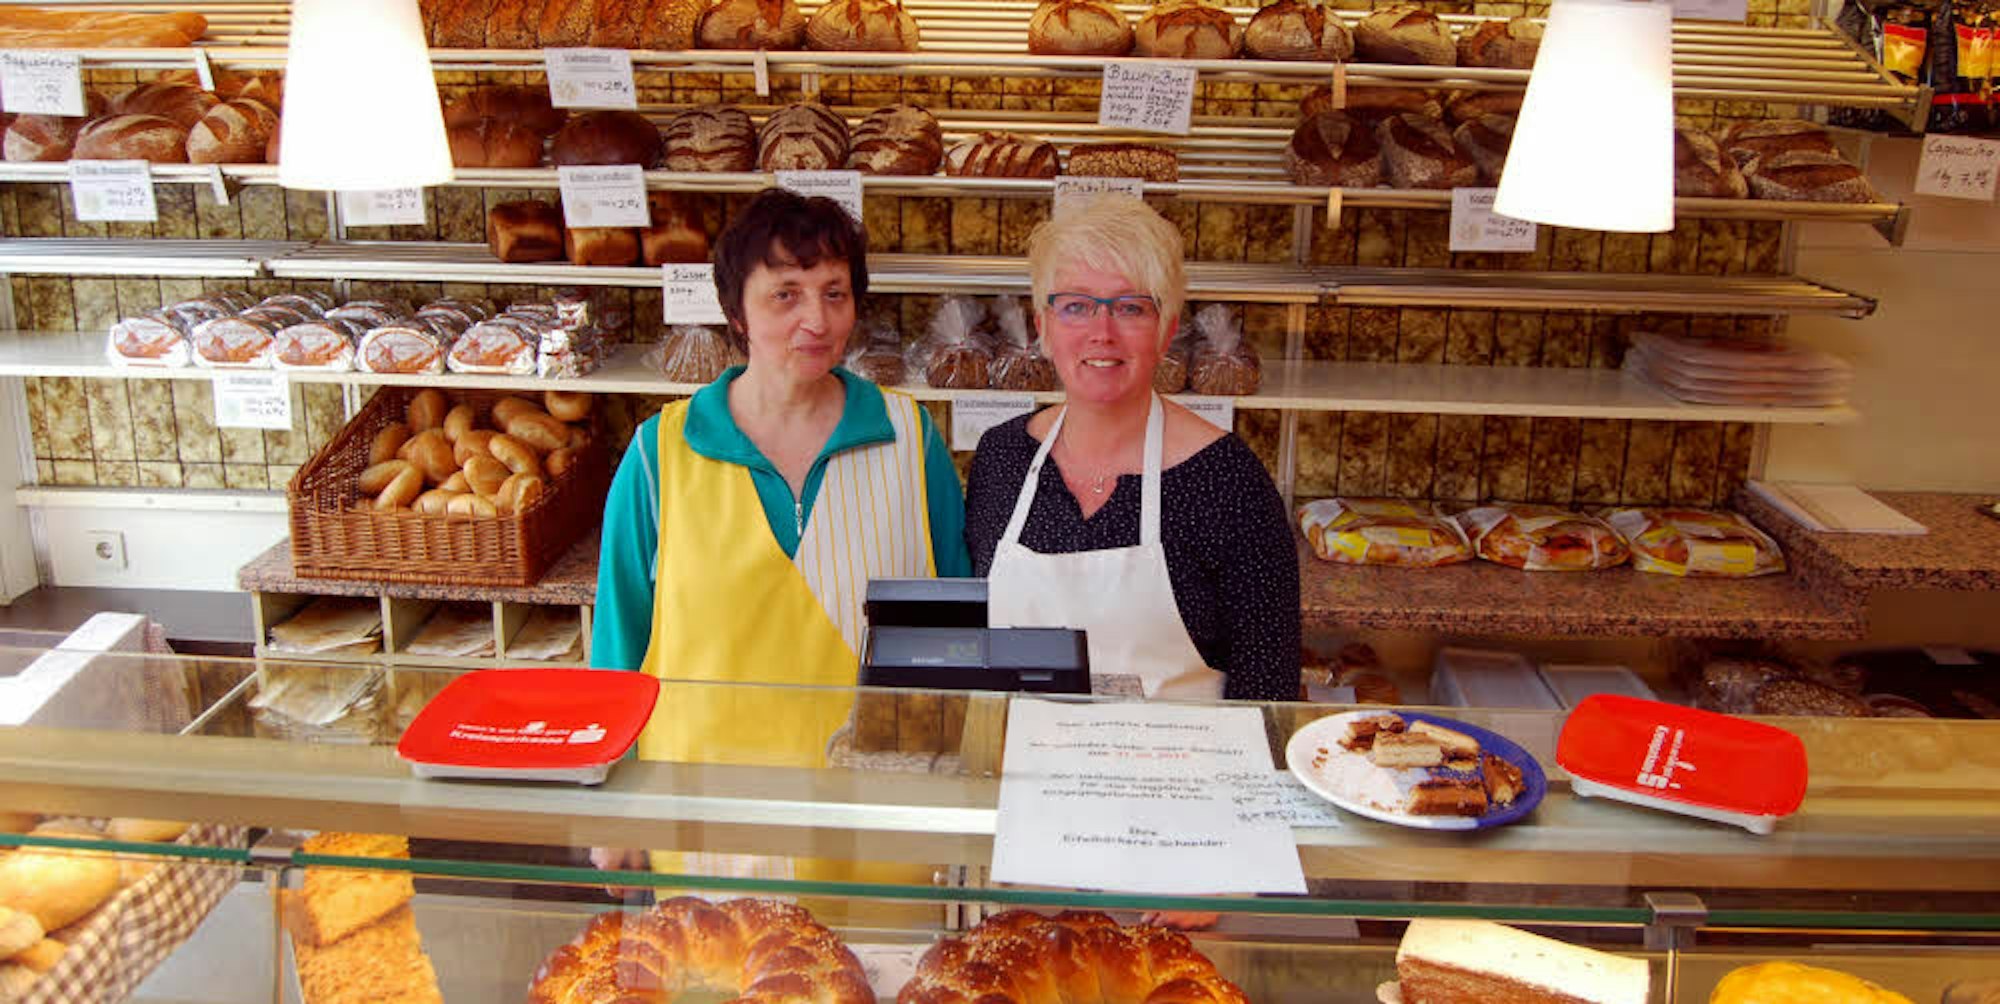 27 Jahre hat Sandra Metz (r.), hier mit ihrer Kollegin Monika Piwowarsky, in der Bäckerei ihres Vaters im Verkauf gearbeitet. Zweimal pro Woche fuhr sie zudem mit einem Bäckerwagen durch Billig und Rheder.